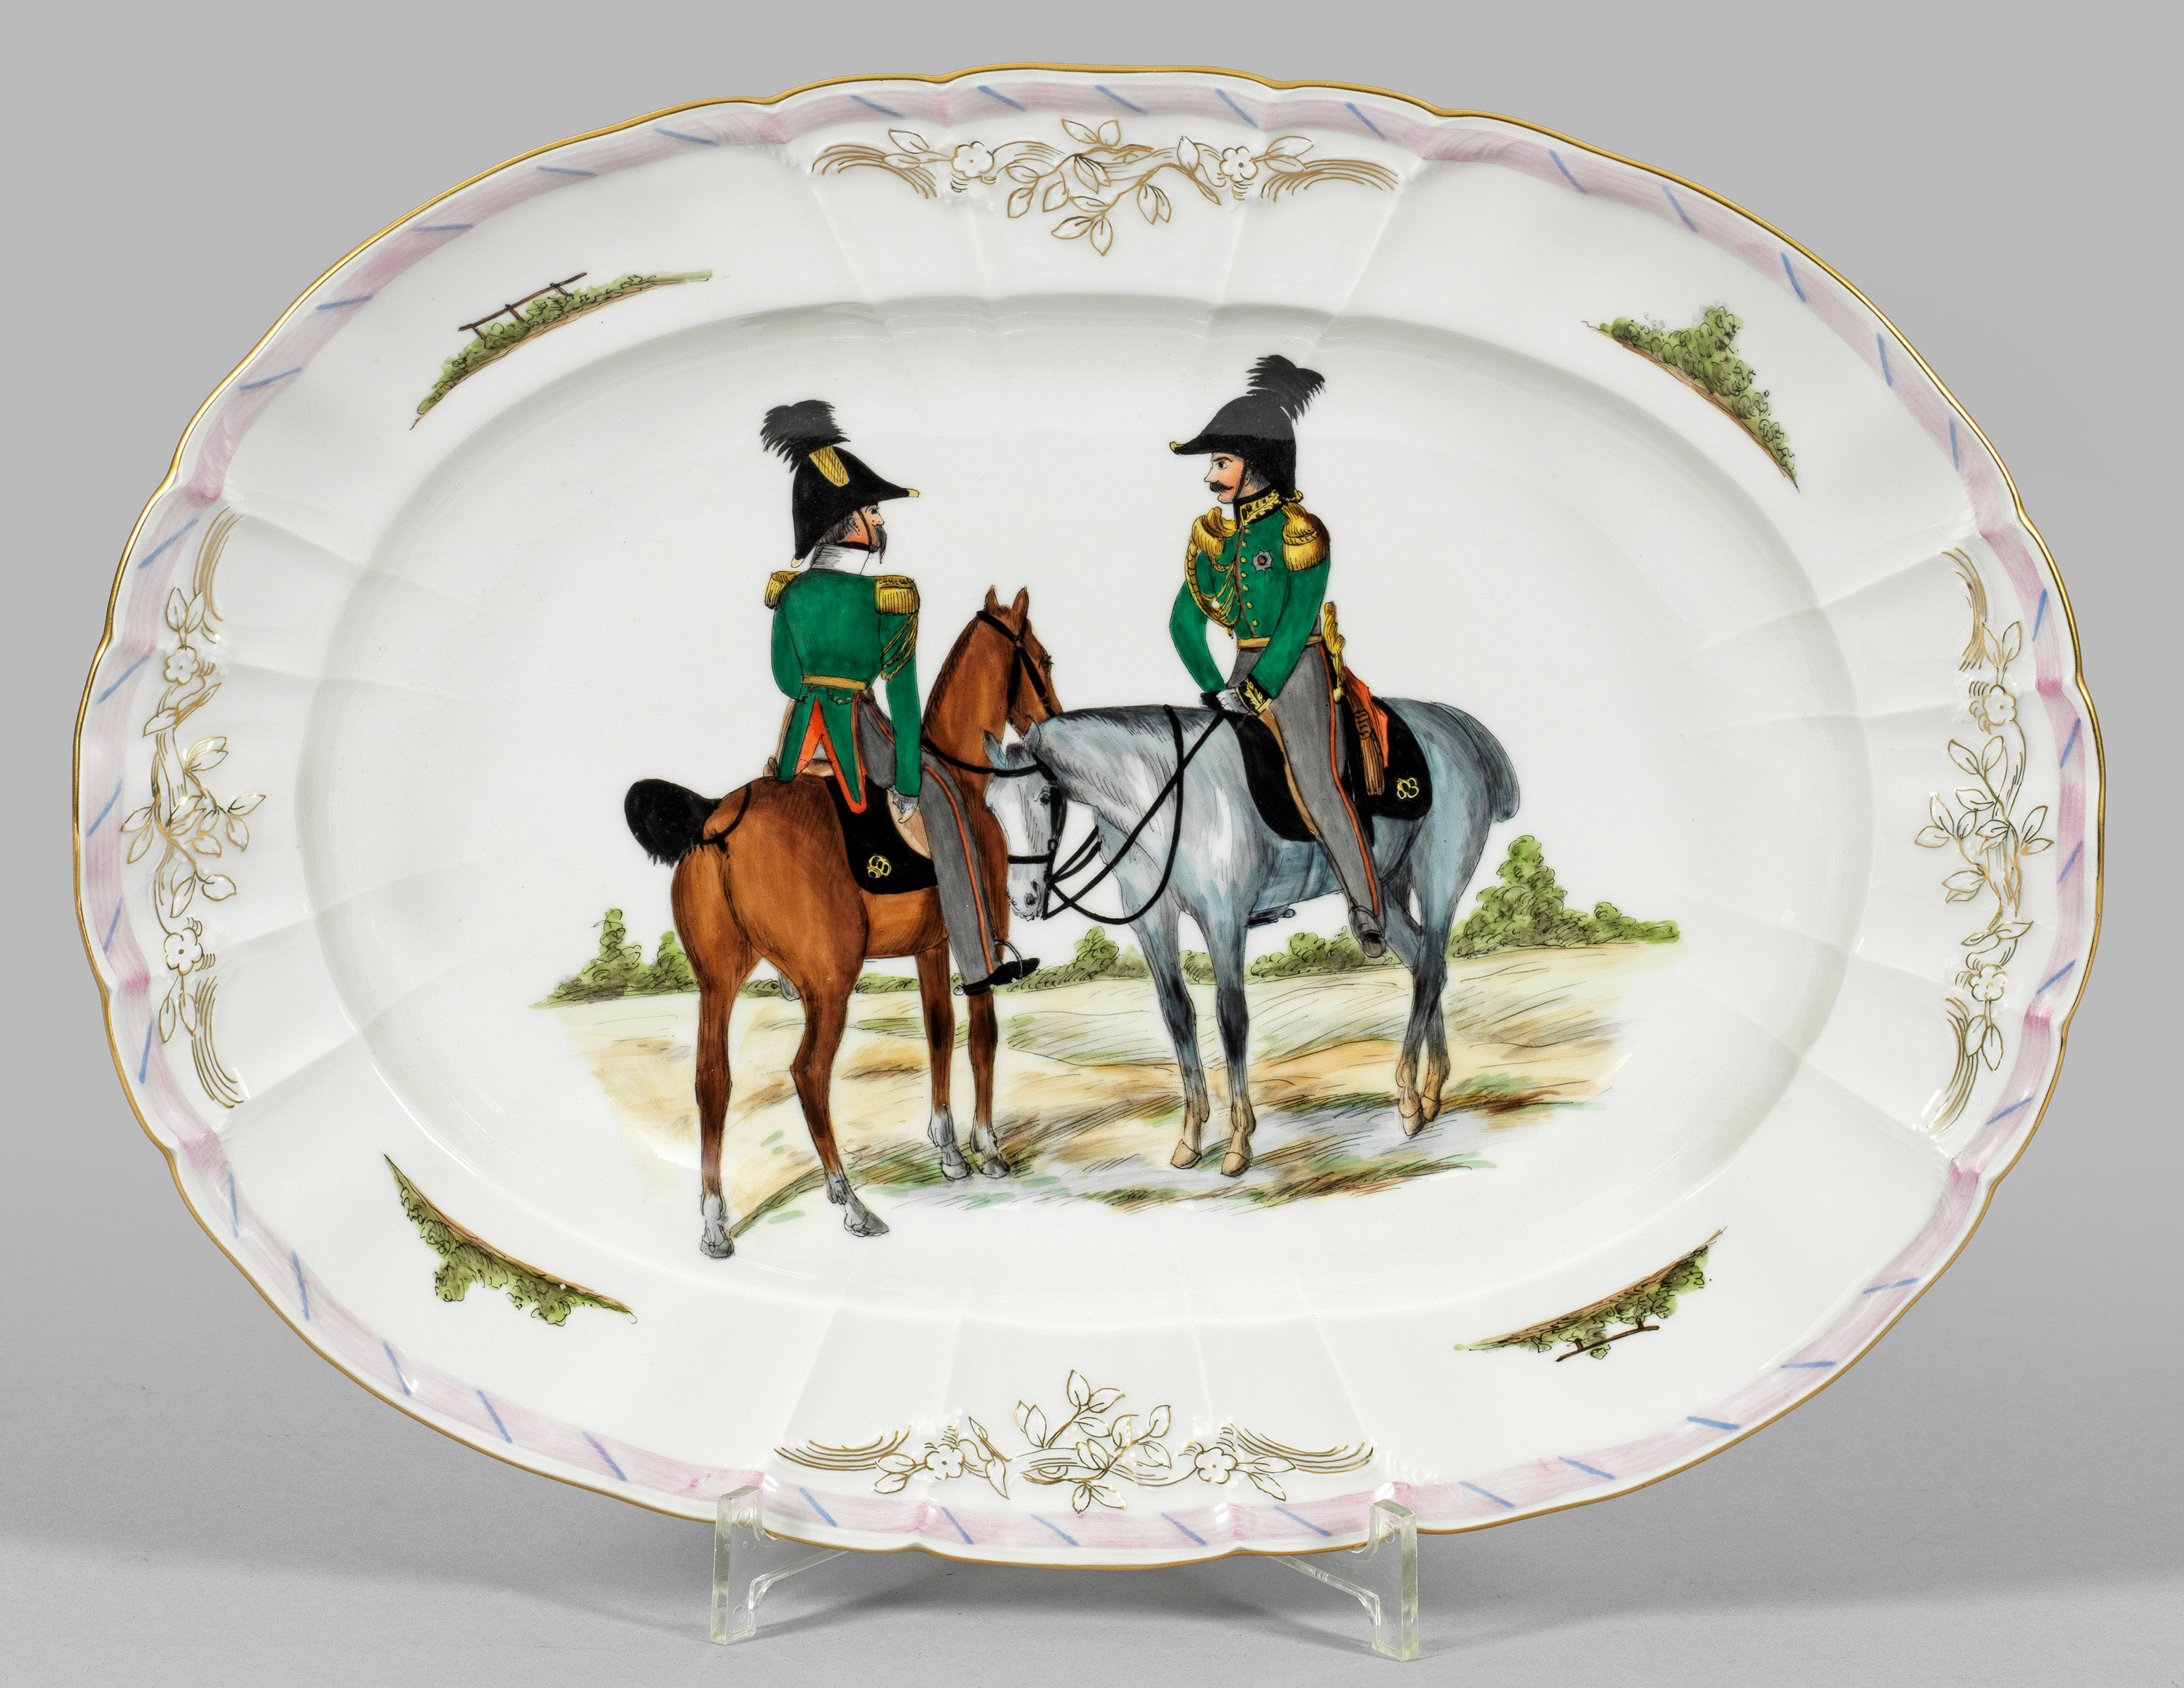 Ovale Platte mit Darstellung zweier berittener Soldaten